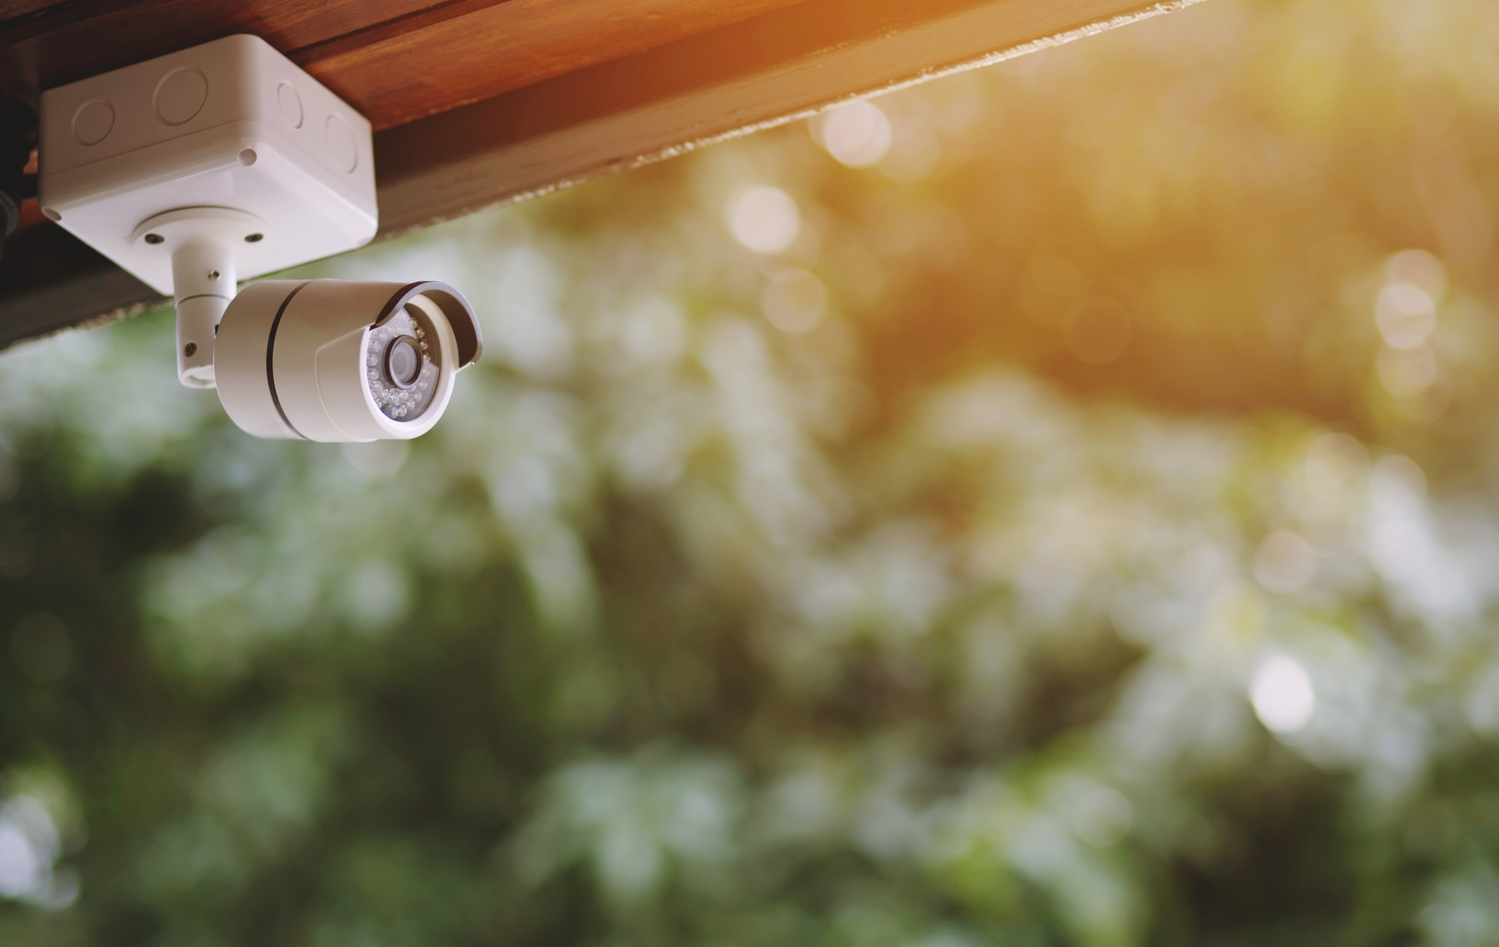 Cómo elegir la mejor cámara de seguridad para el hogar?